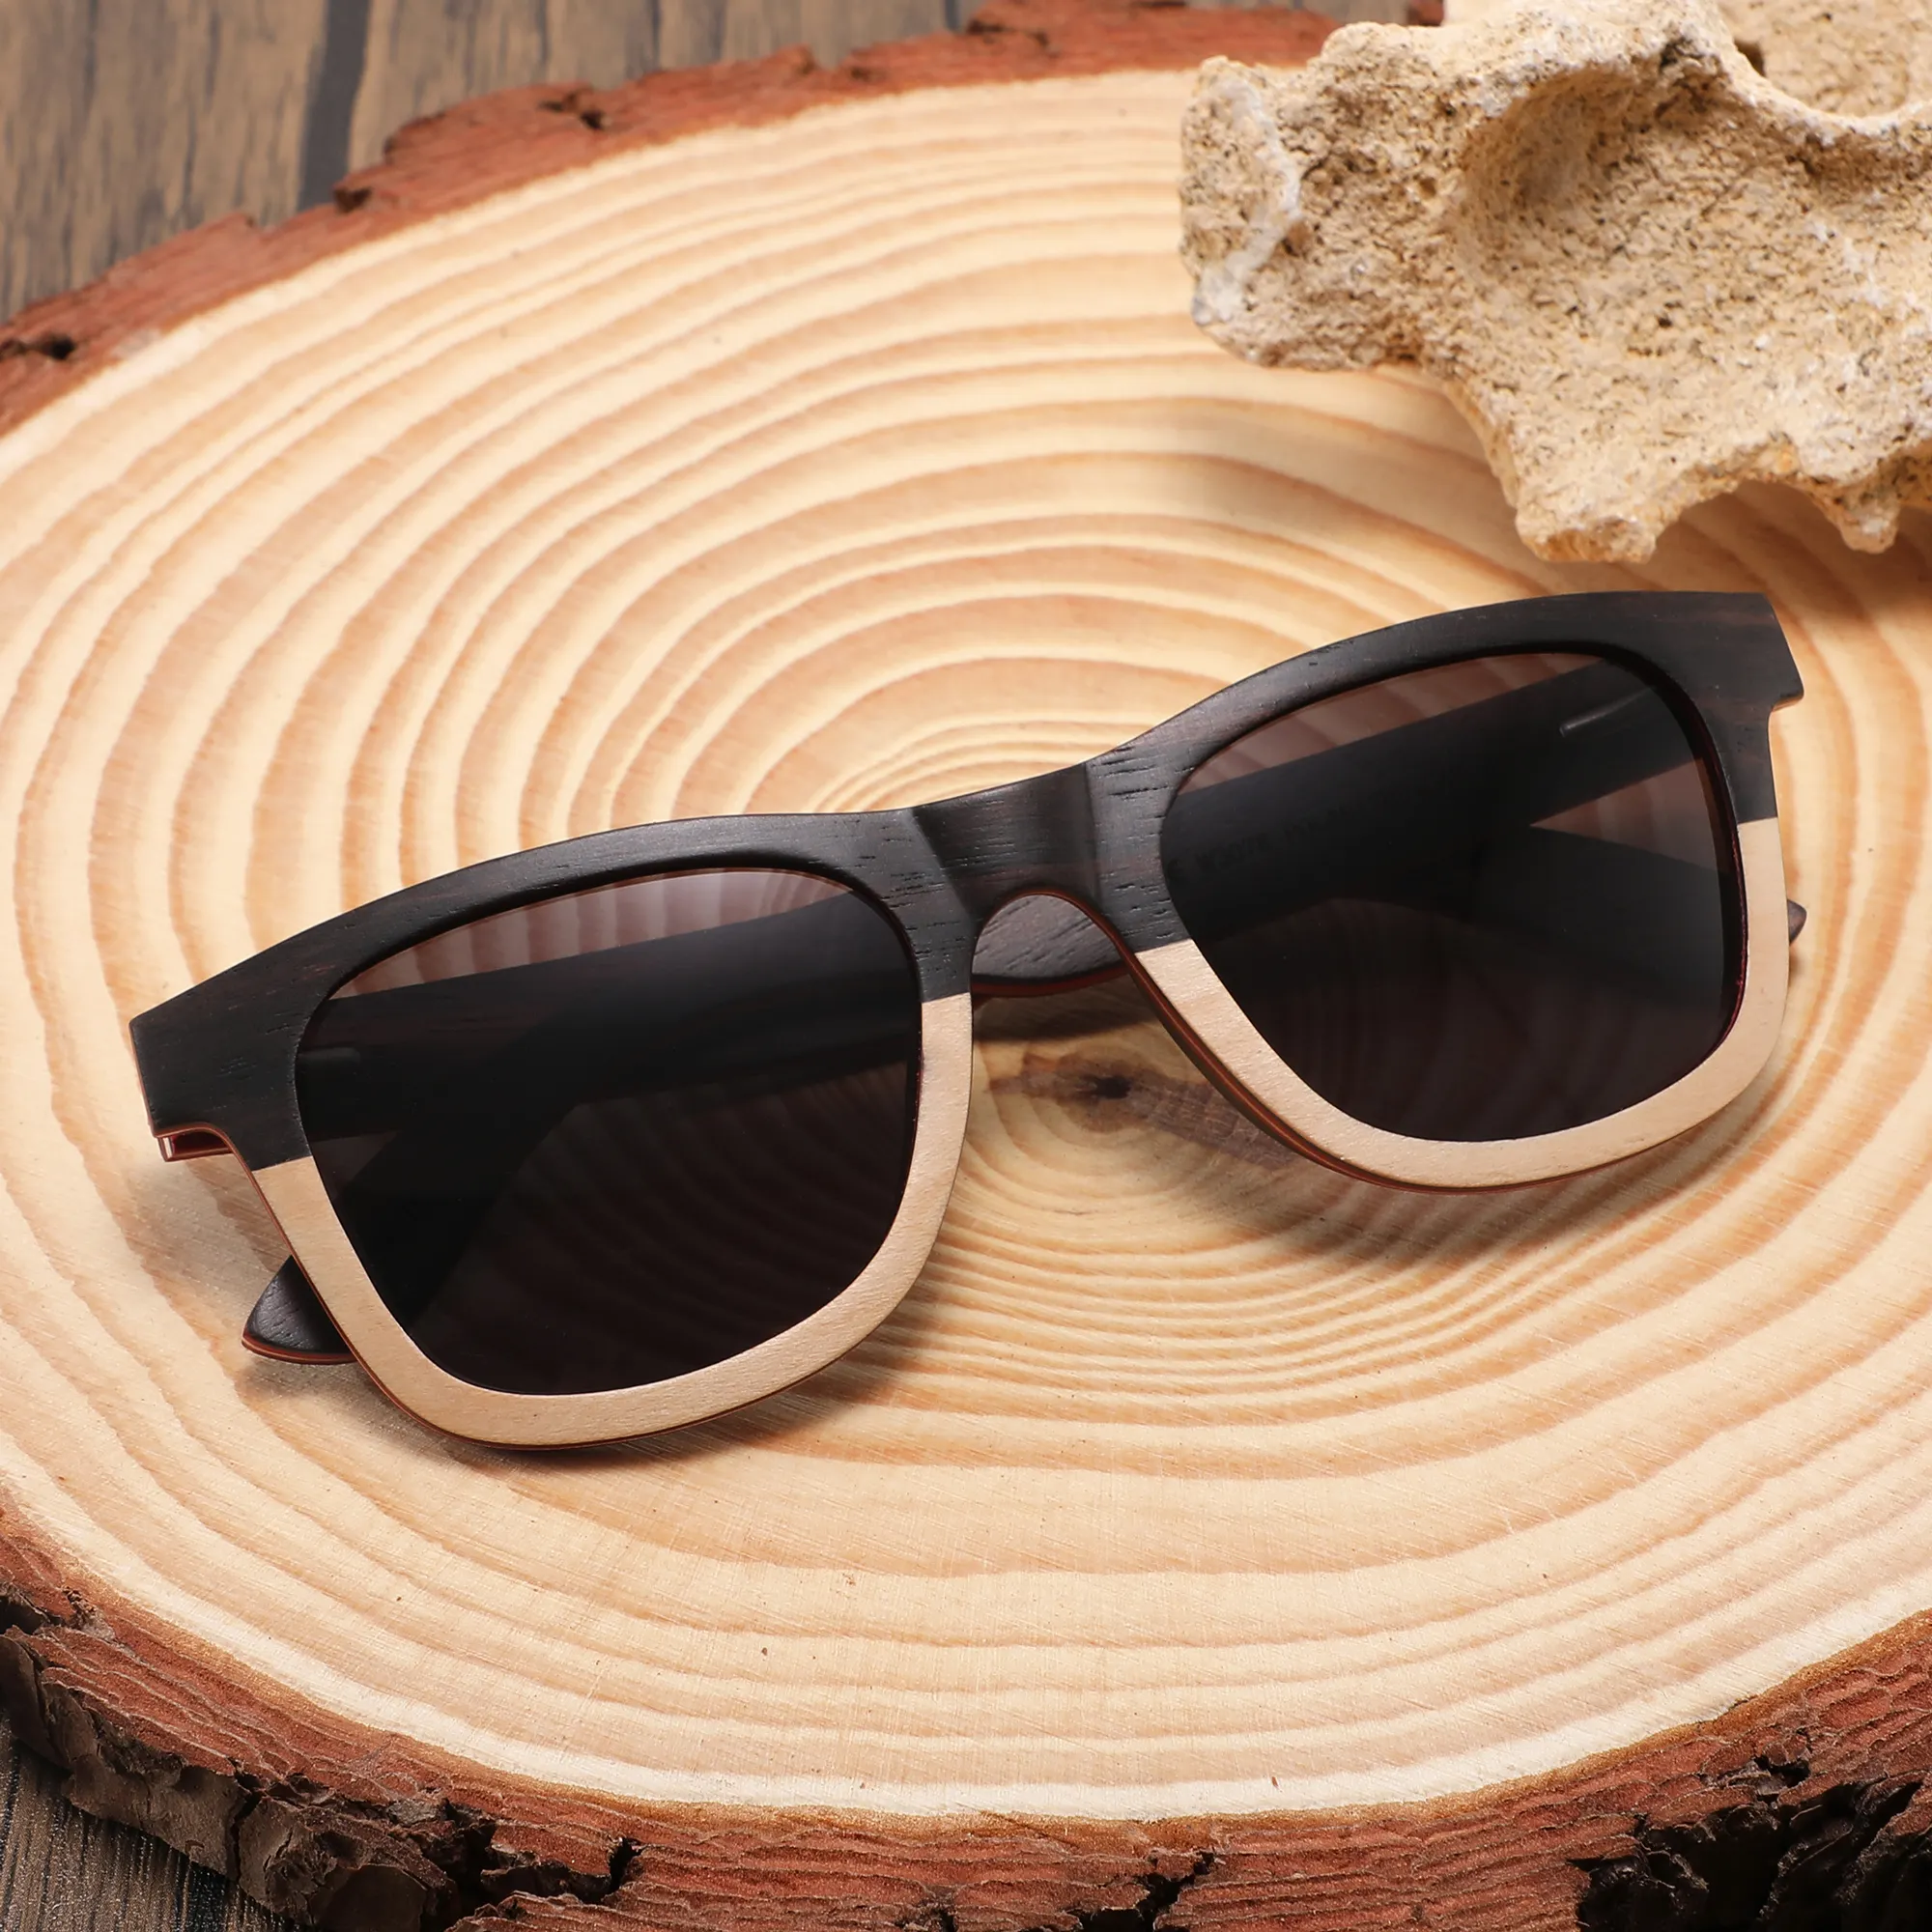 CONCHEN yiwu fabricant de haute qualité lunettes de soleil uniques polarisées belles lunettes de soleil en bois colorées